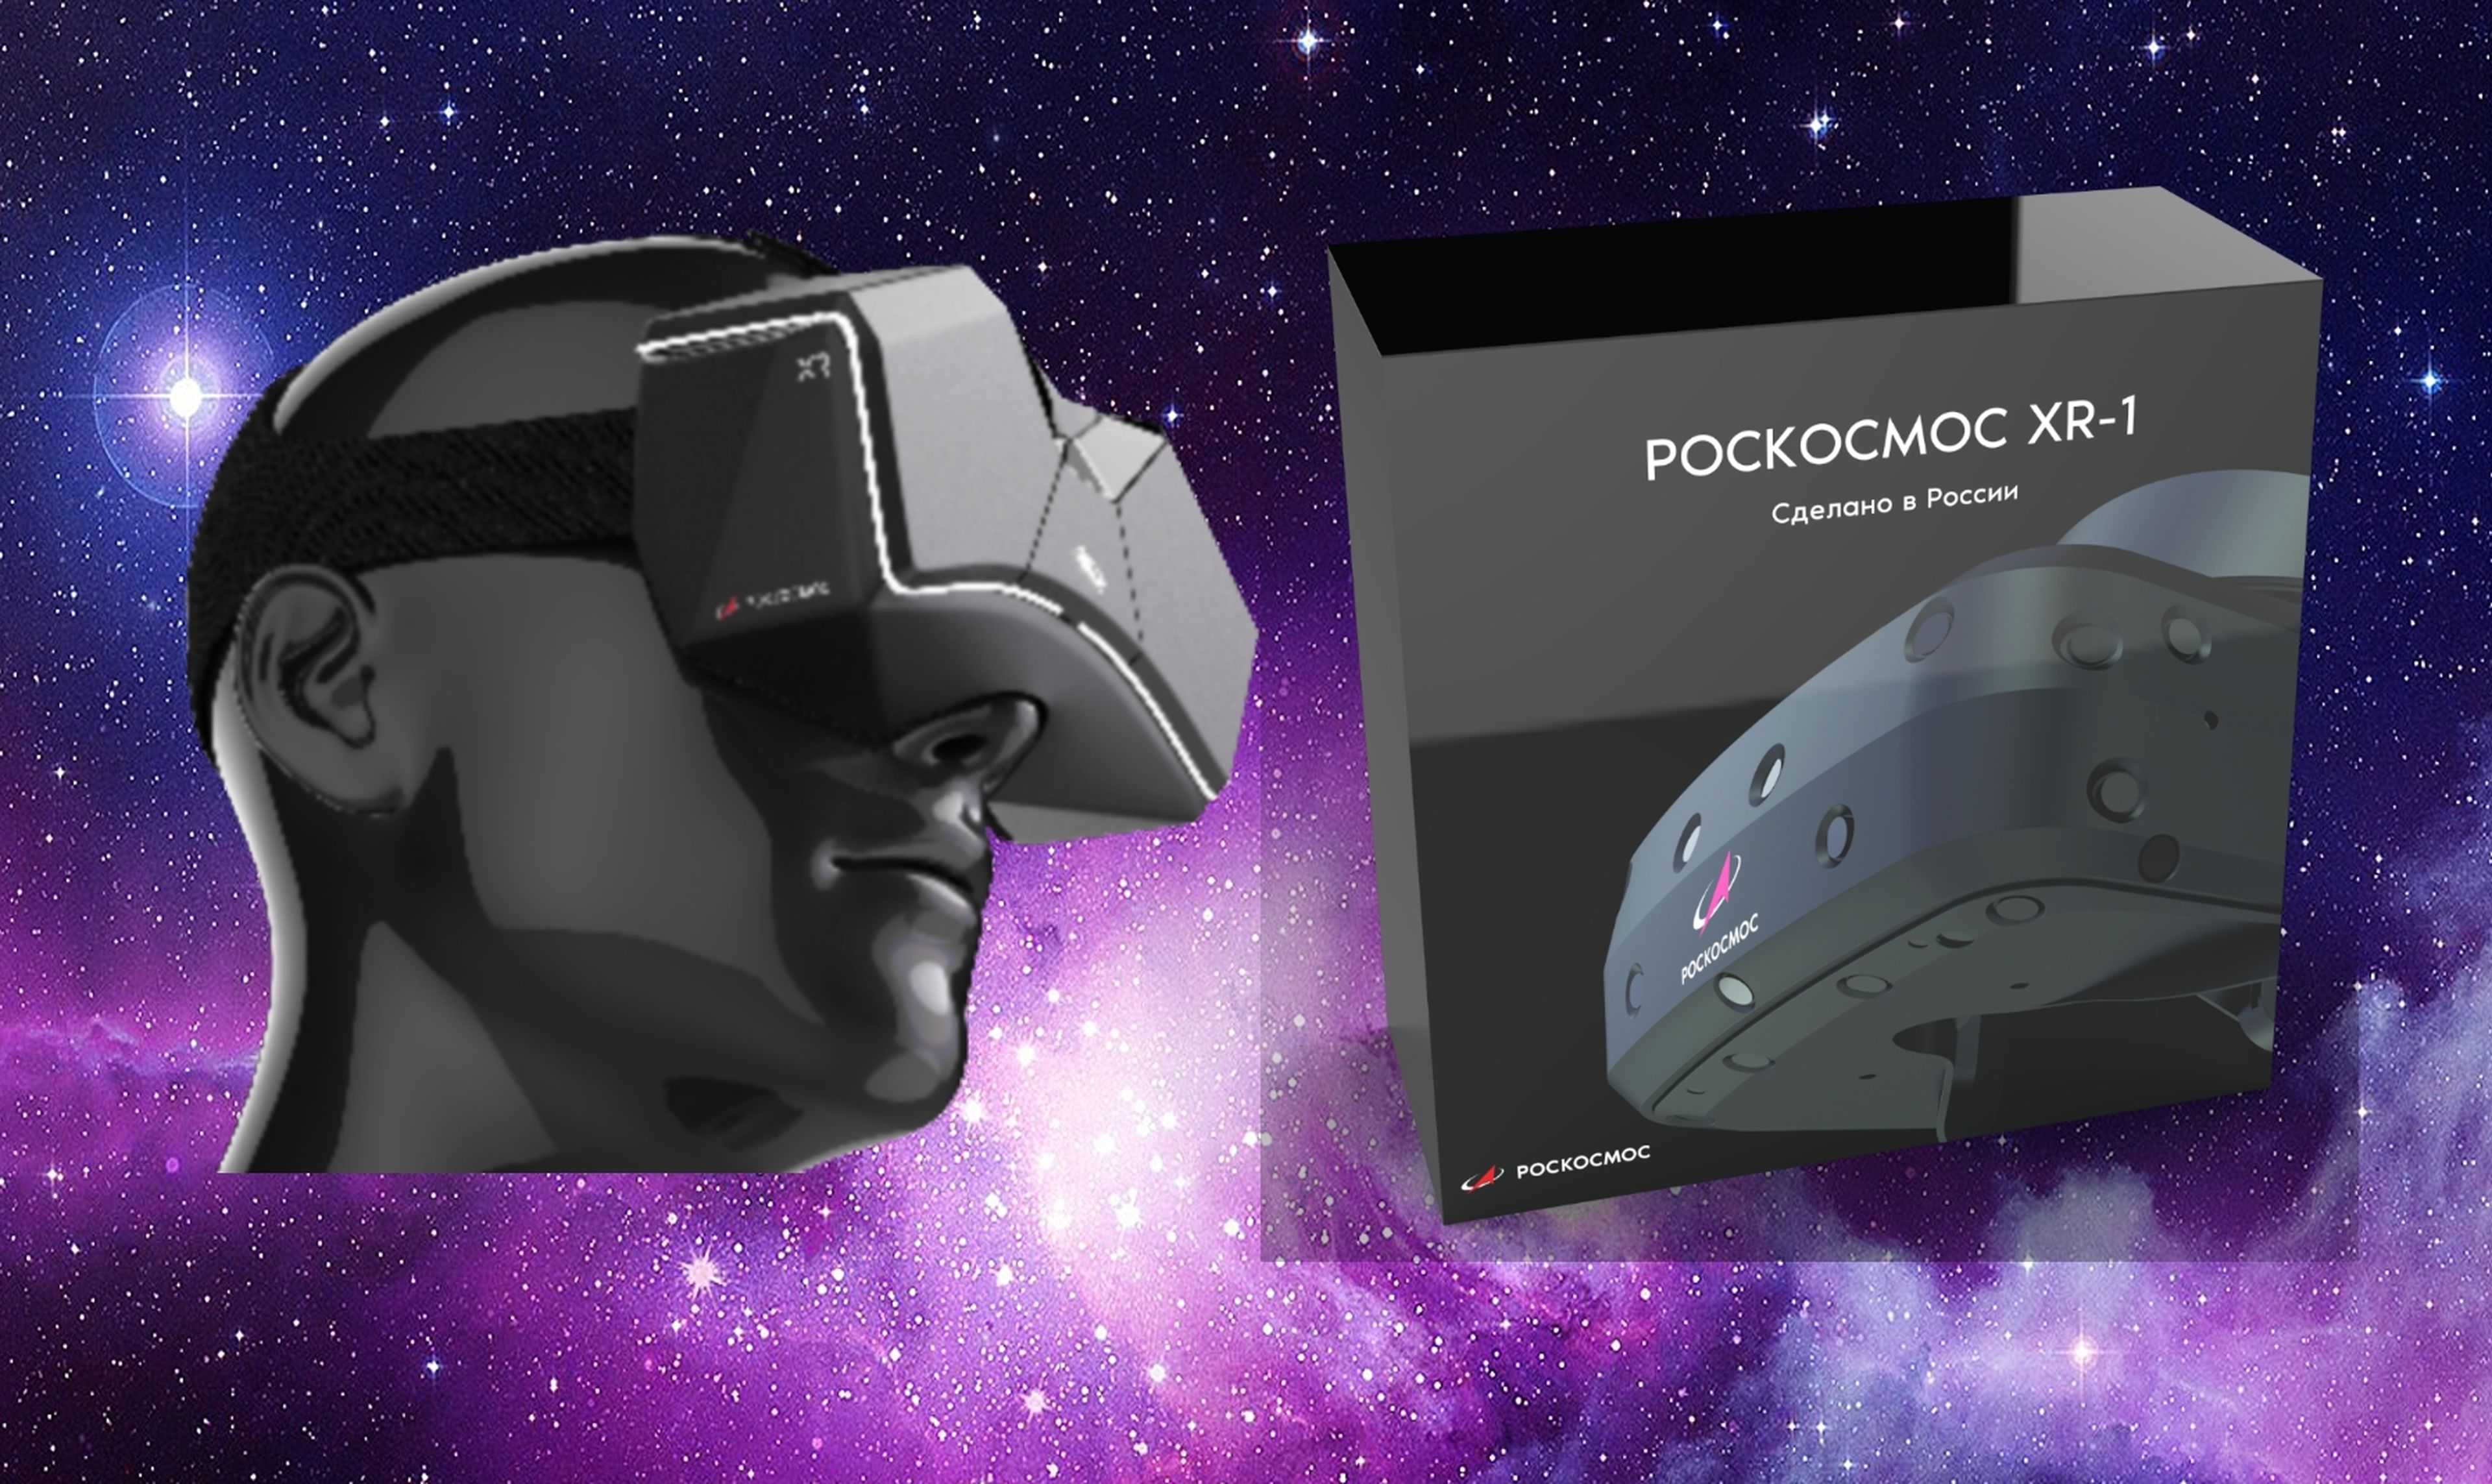 La agencia espacial rusa Roscosmos presenta unas gafas de realidad virtual para Windows 10 y Steam VR